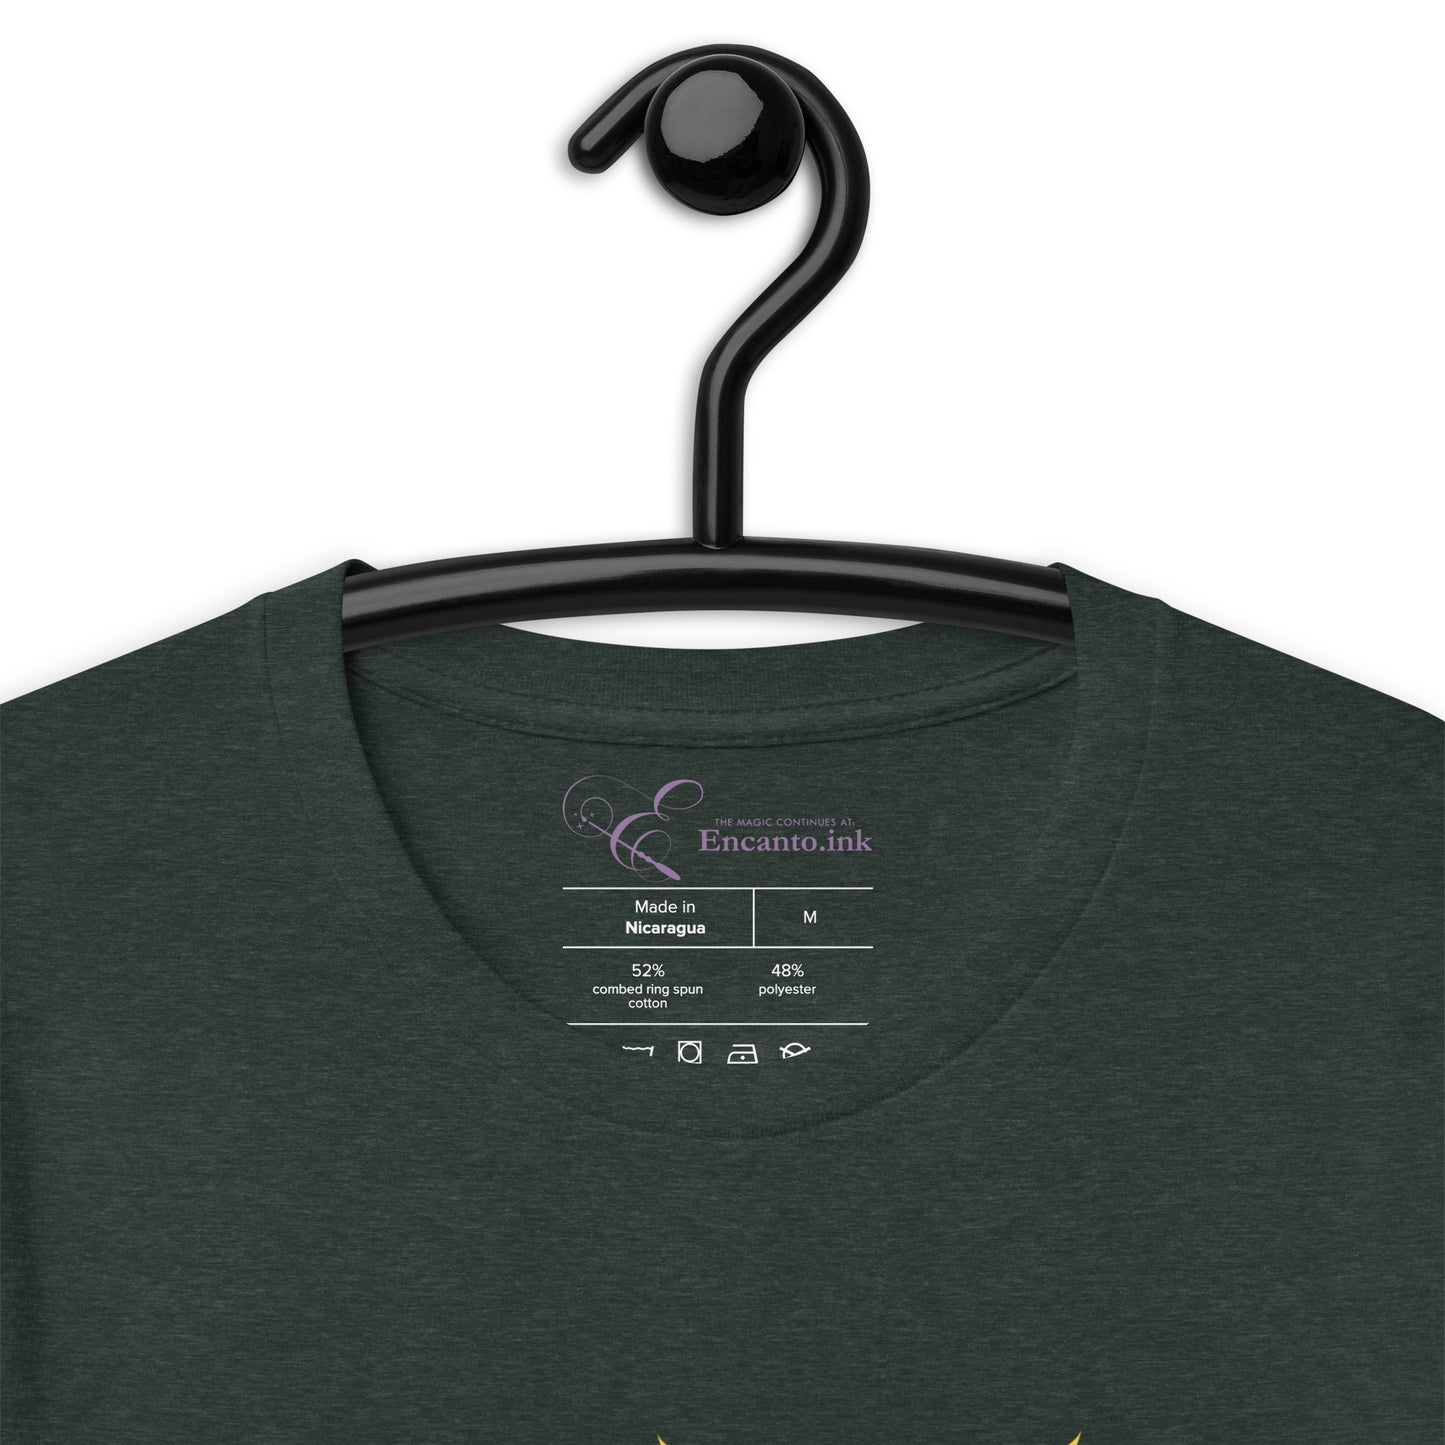 Keeper - Unisex t-shirt